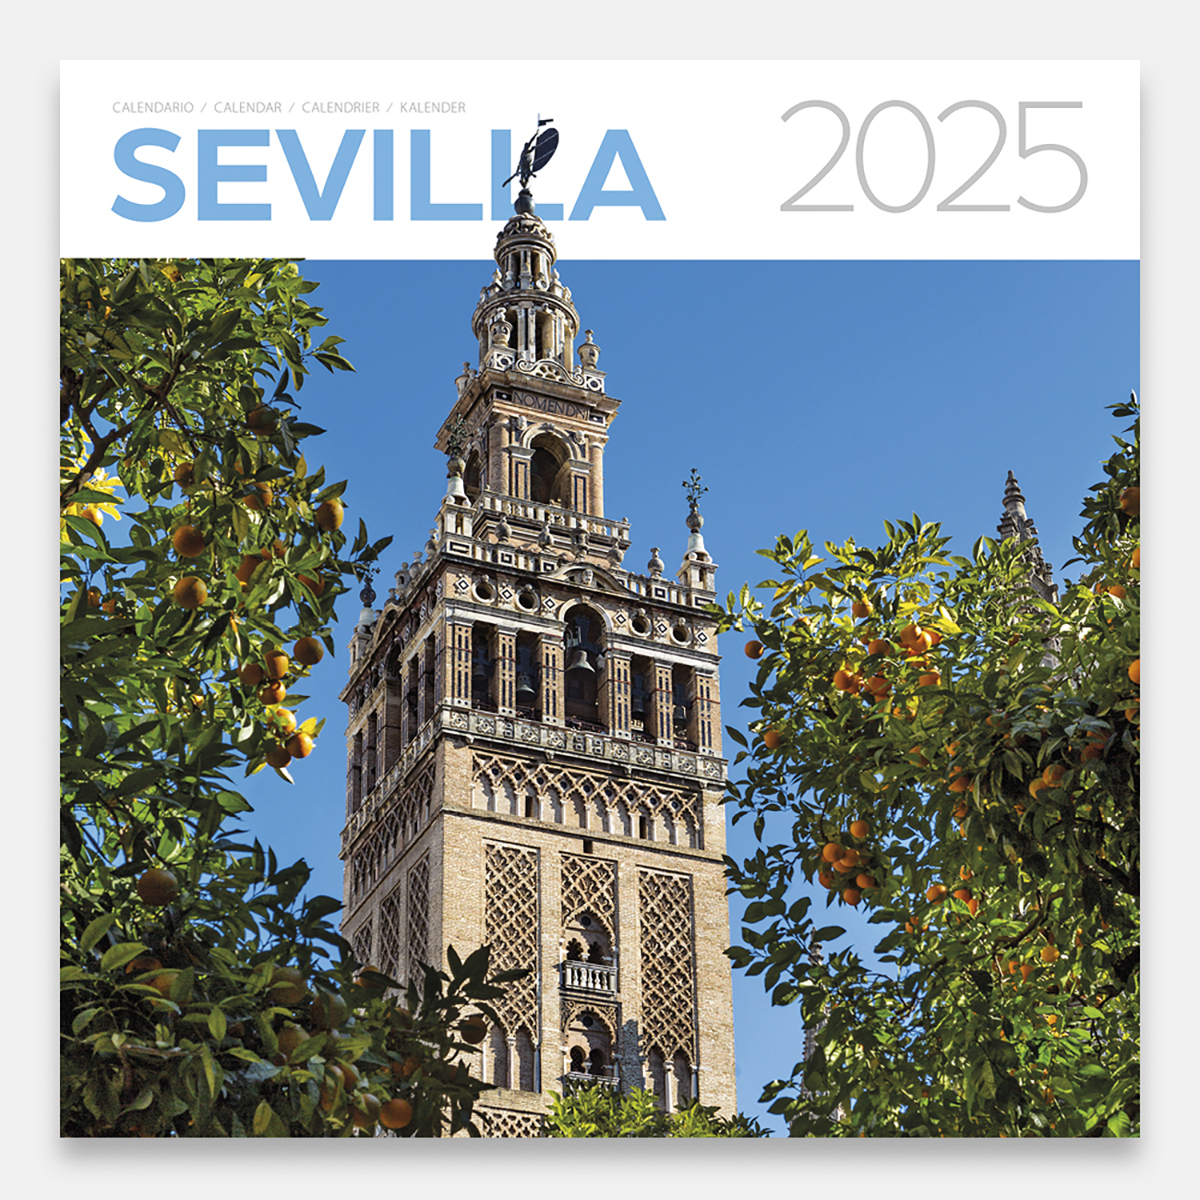 Calendario 2025 Sevilla 25sg calendario pared 2025 sevilla